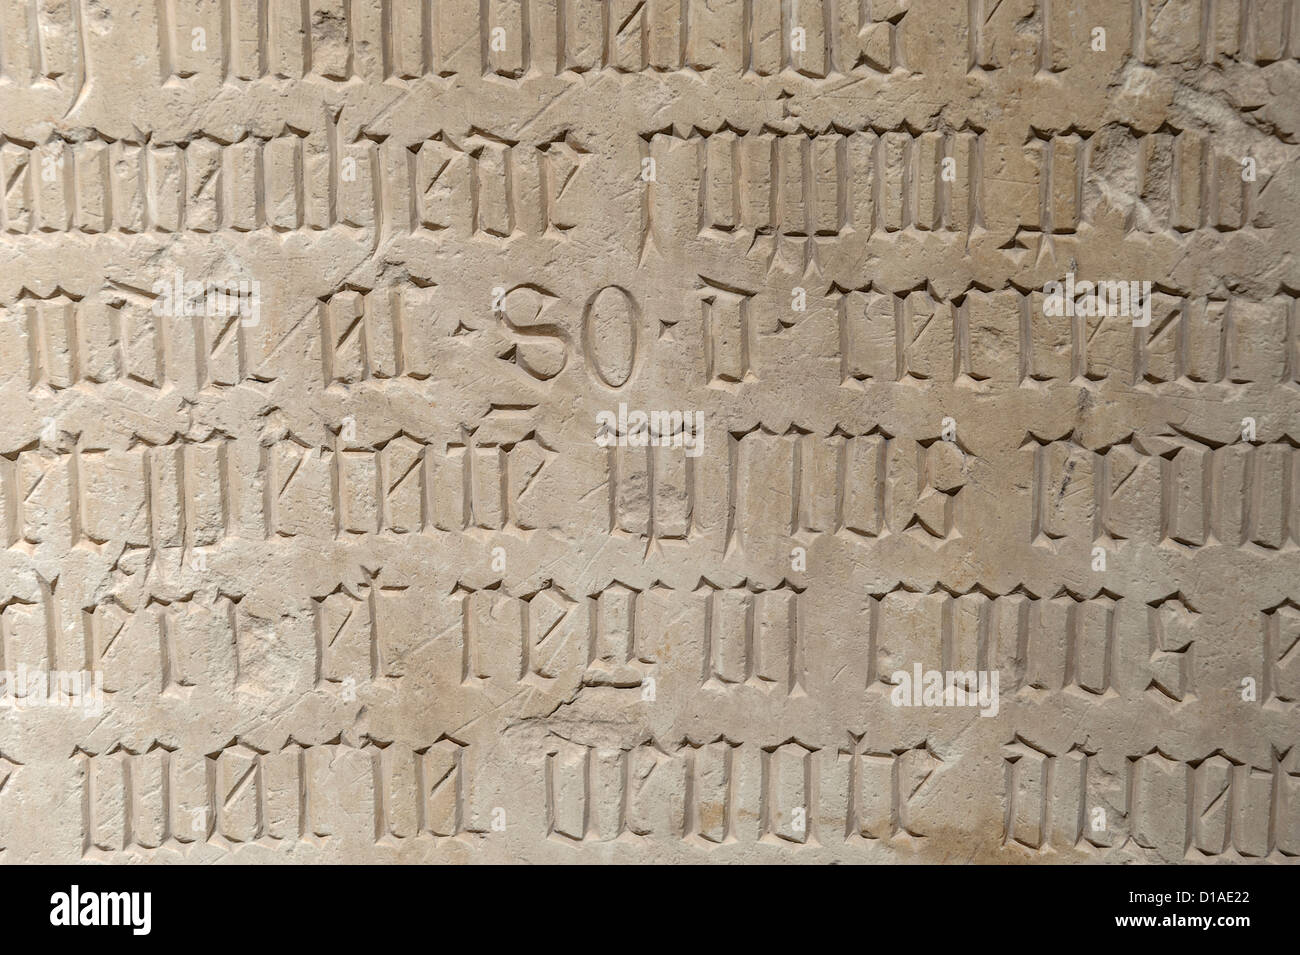 Textes médiévaux anciens gravés sur pierre Banque D'Images